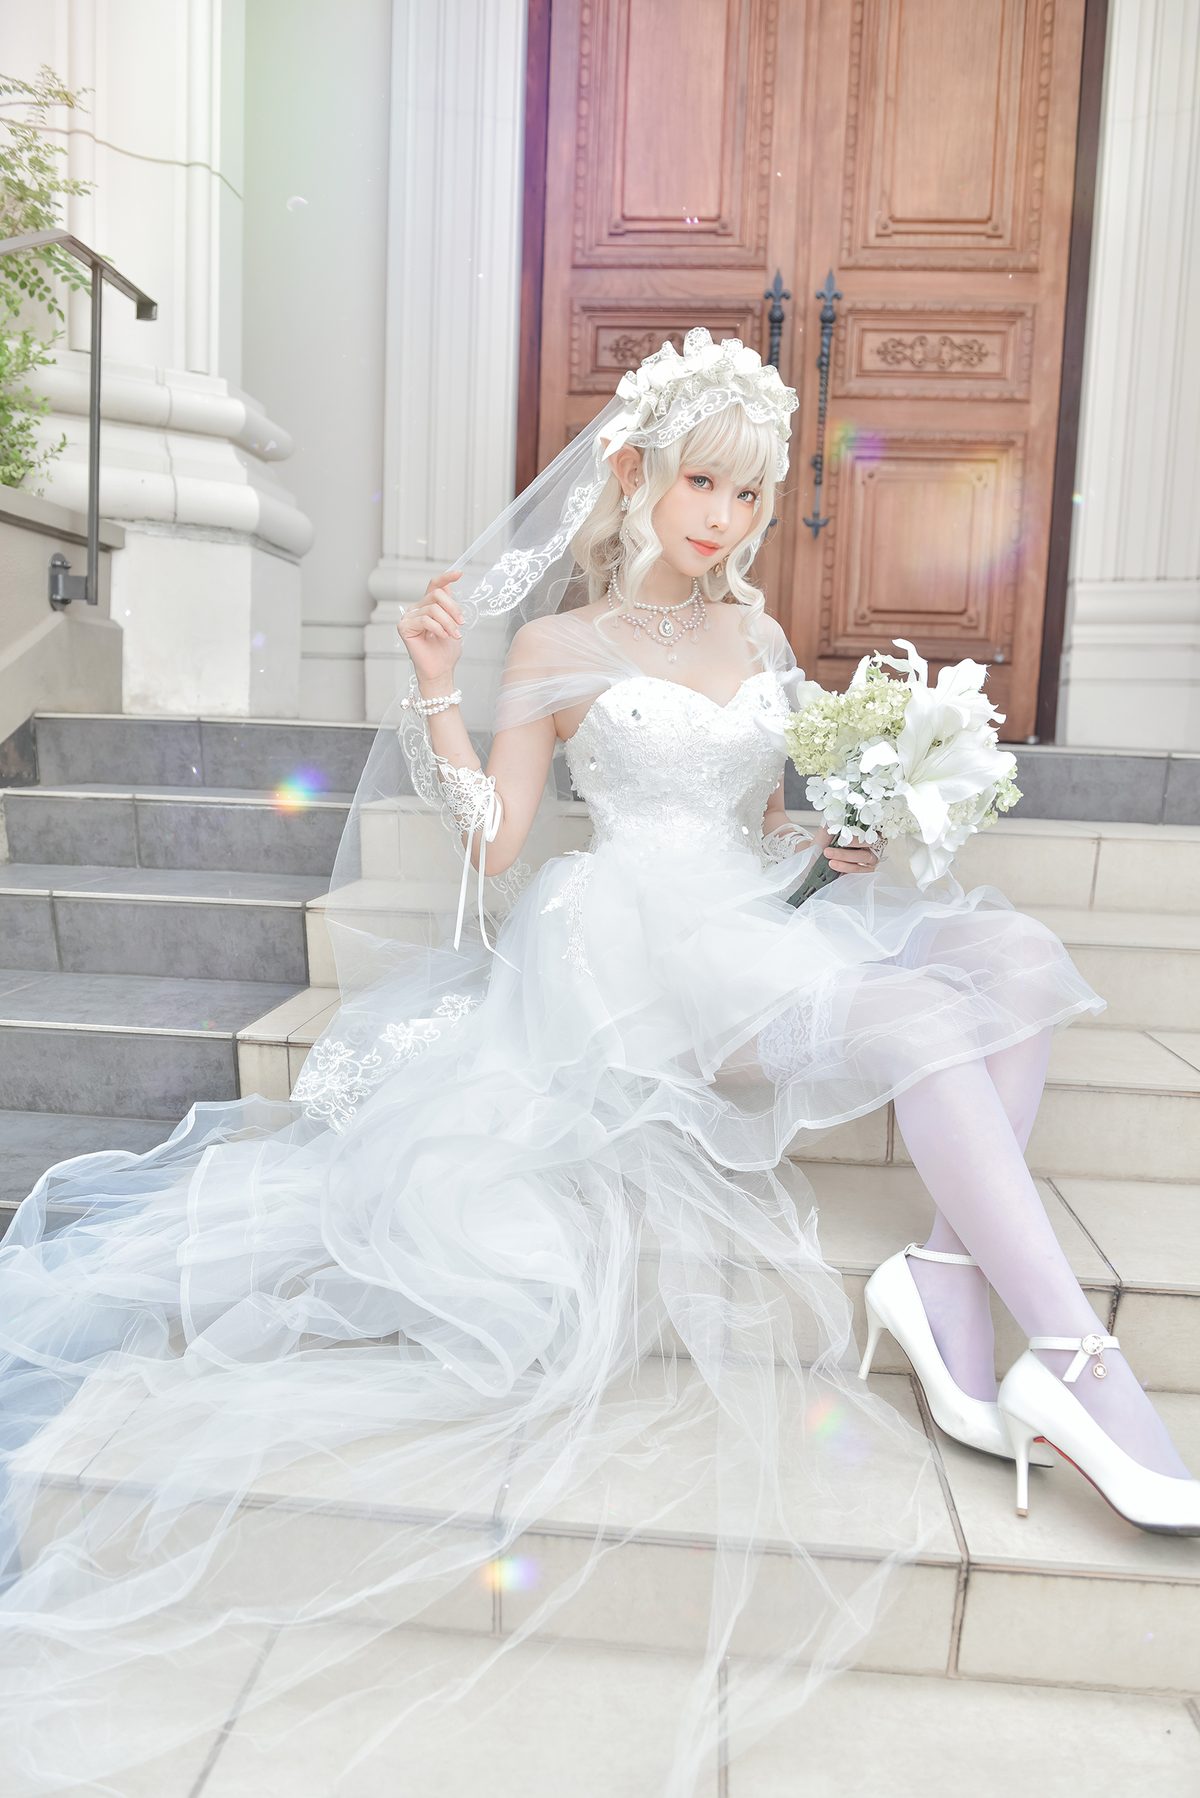 Coser@Ely_eee ElyEE子 Bride And Lingerie 0048 6230111472.jpg